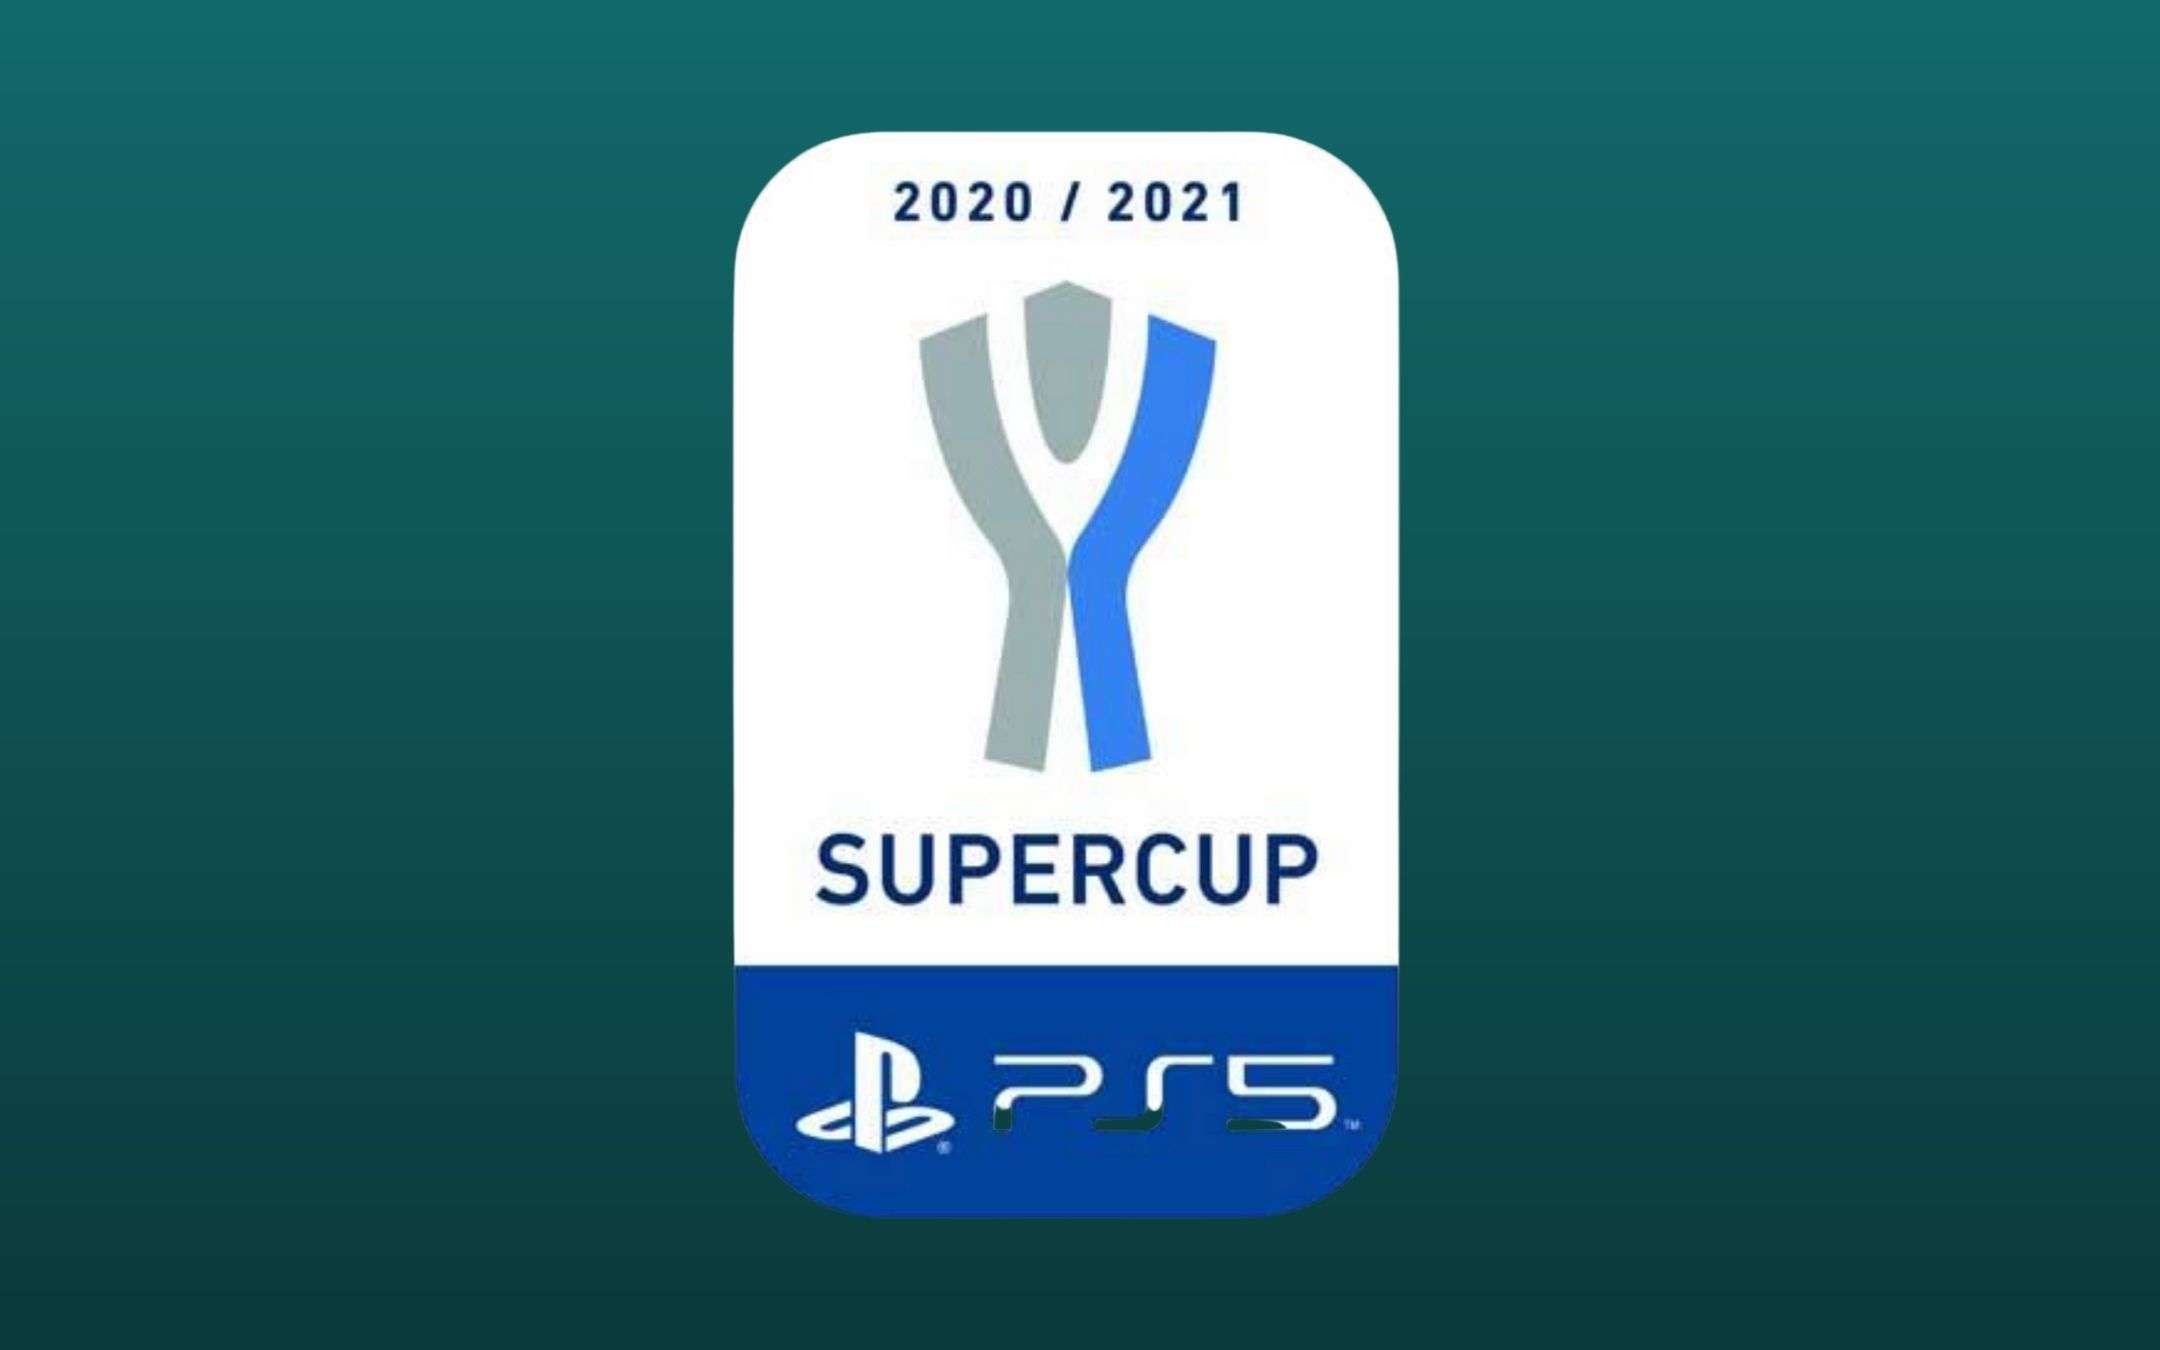 PS5 è title sponsor della Supercoppa italiana 2020